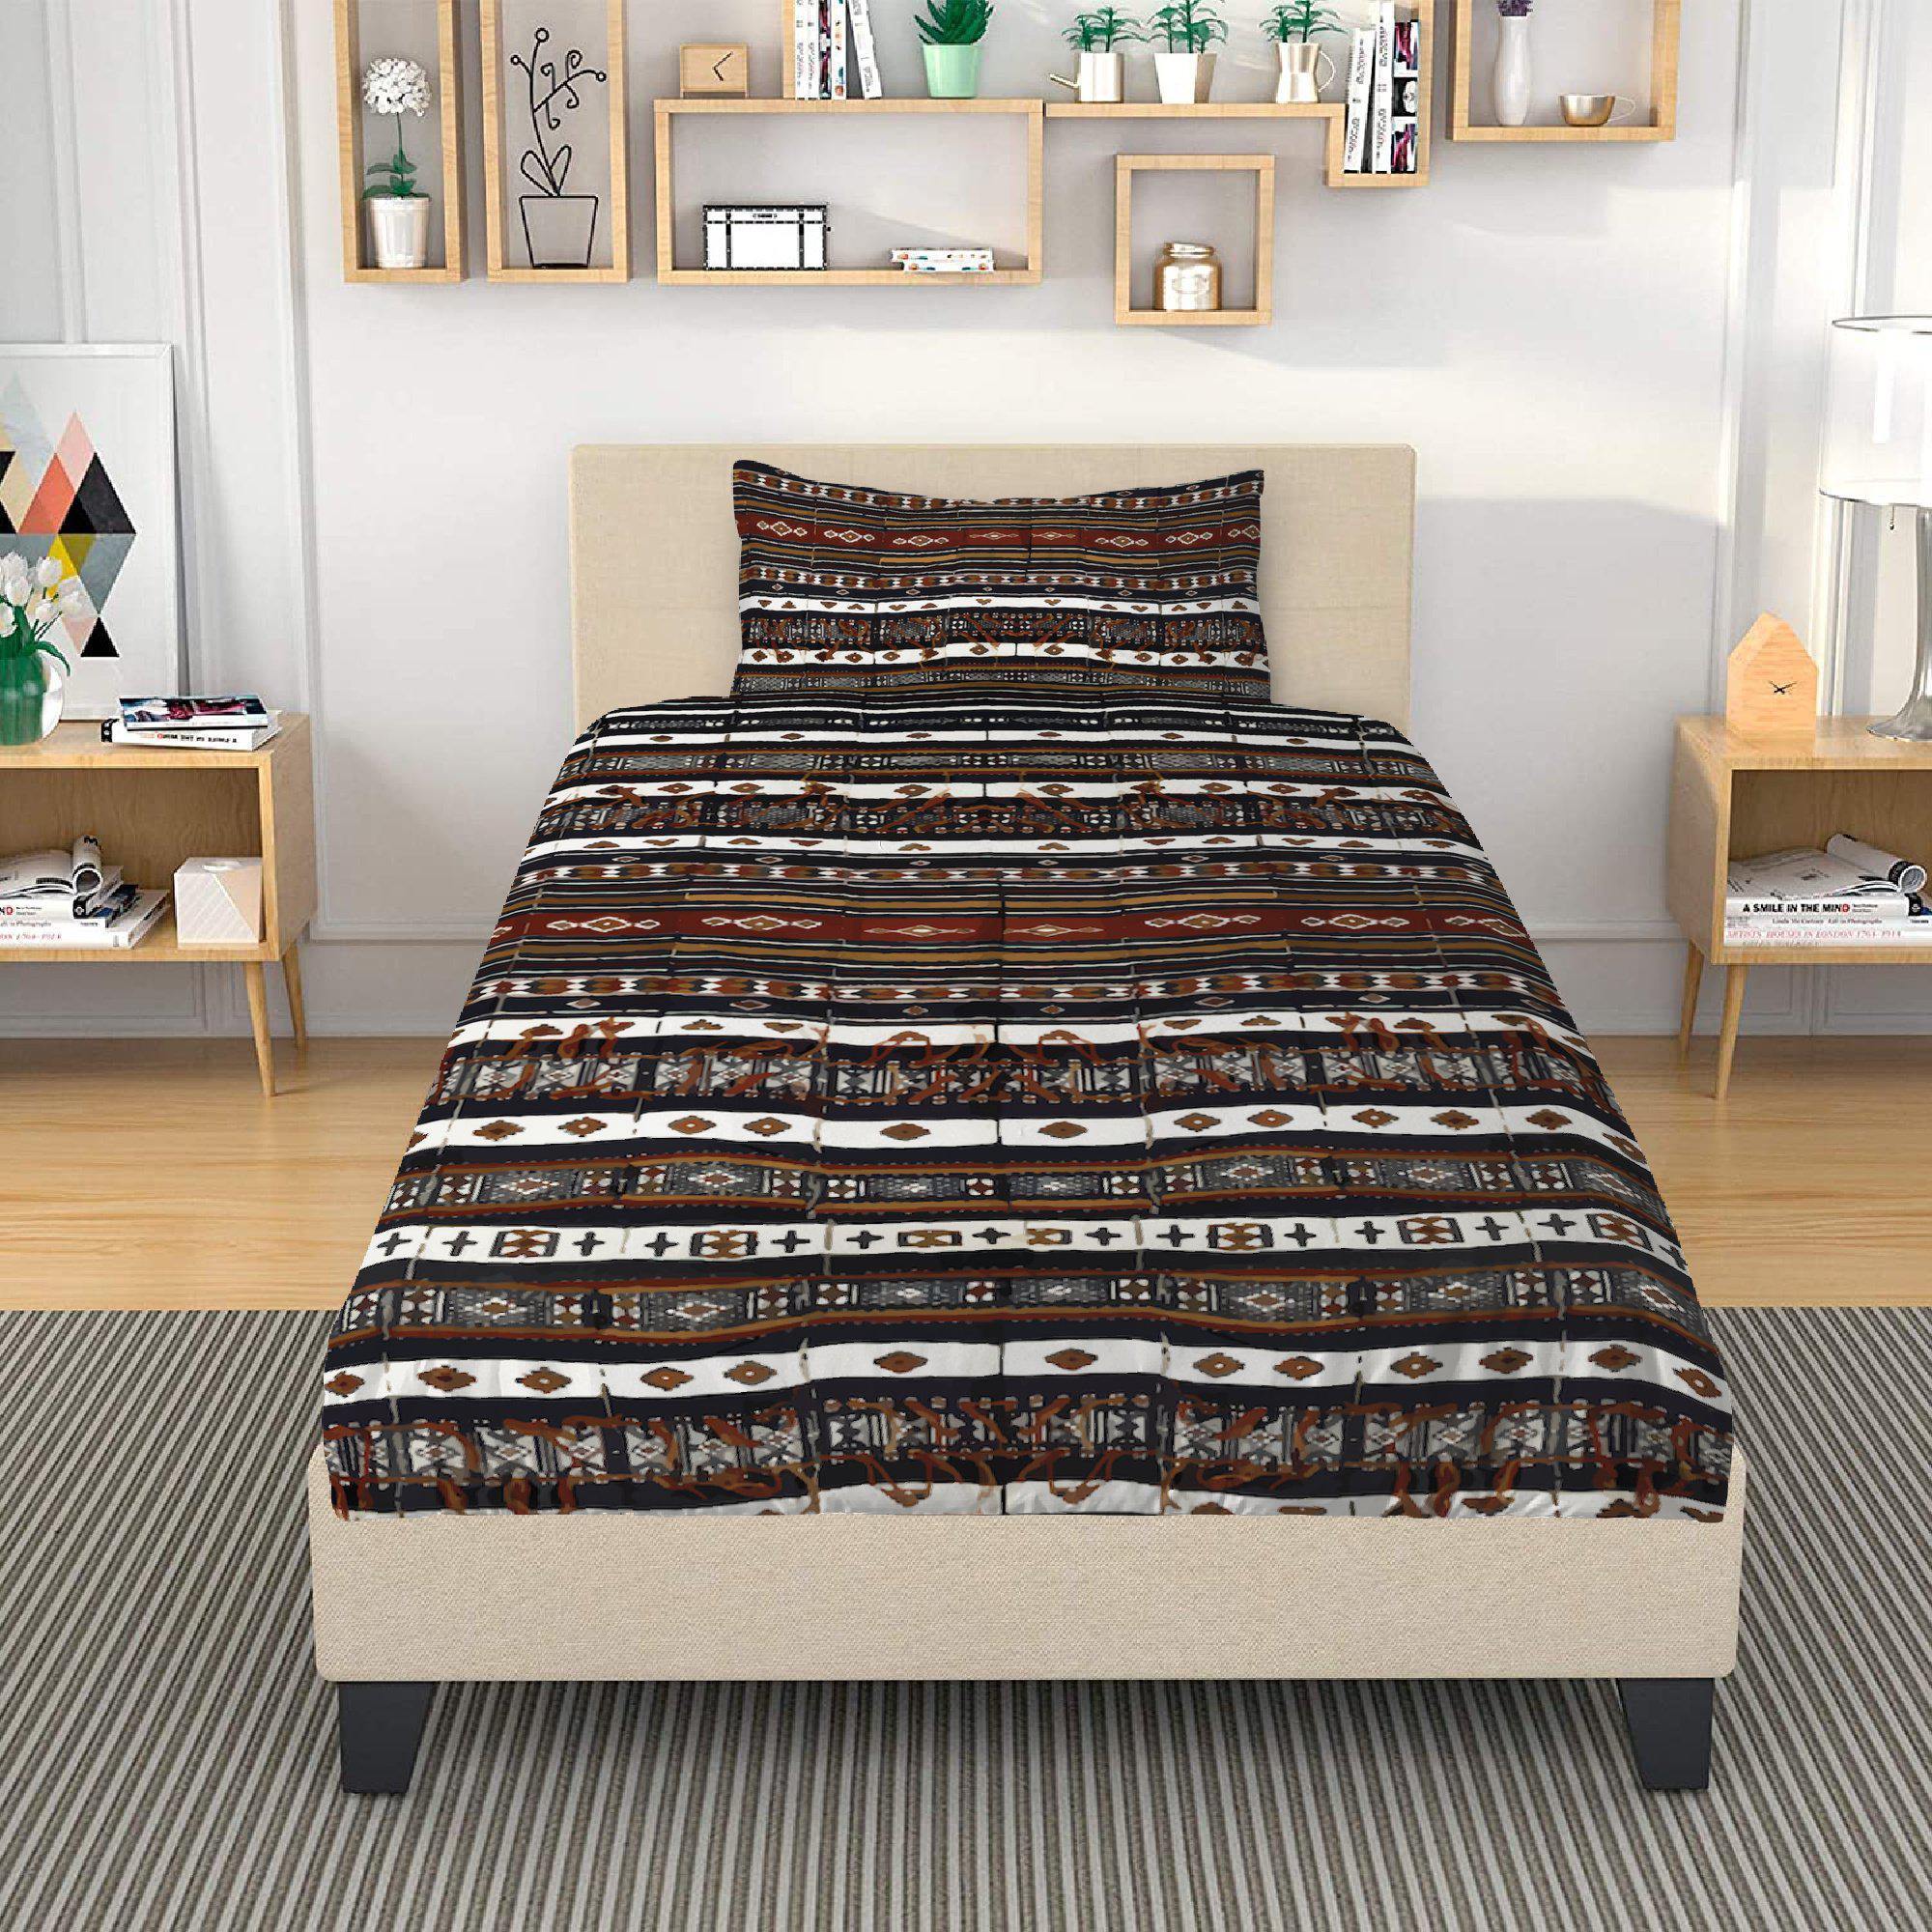 Bedding sets Bedding Set, Fulani Culture Design